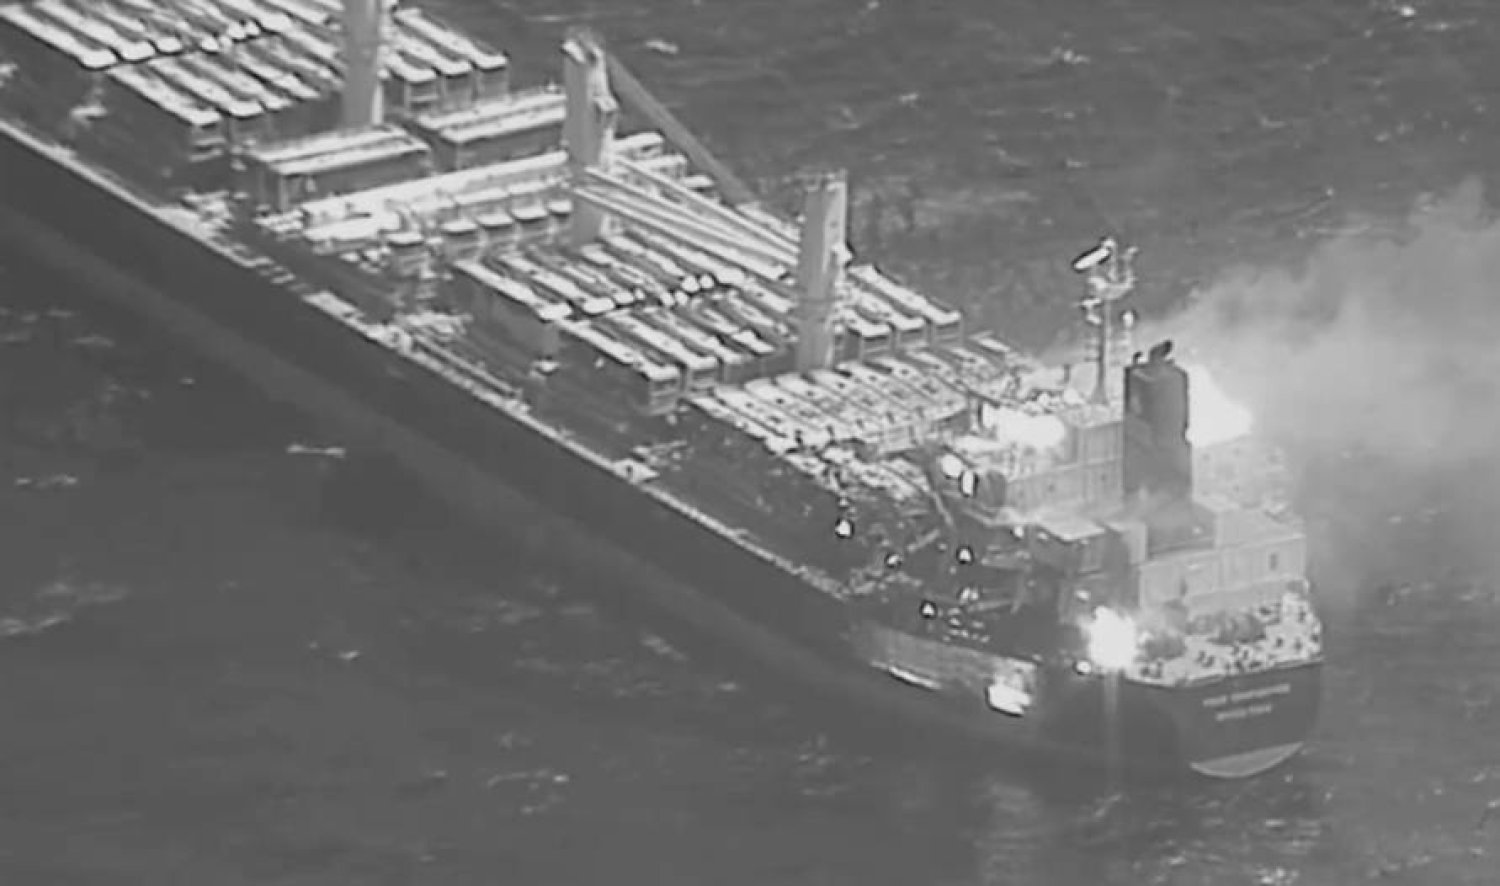 Aden Körfezi'nde Husilere ait bir füze tarafından vurulan kargo gemisinin havadan fotoğrafı (ABD Ordusu)